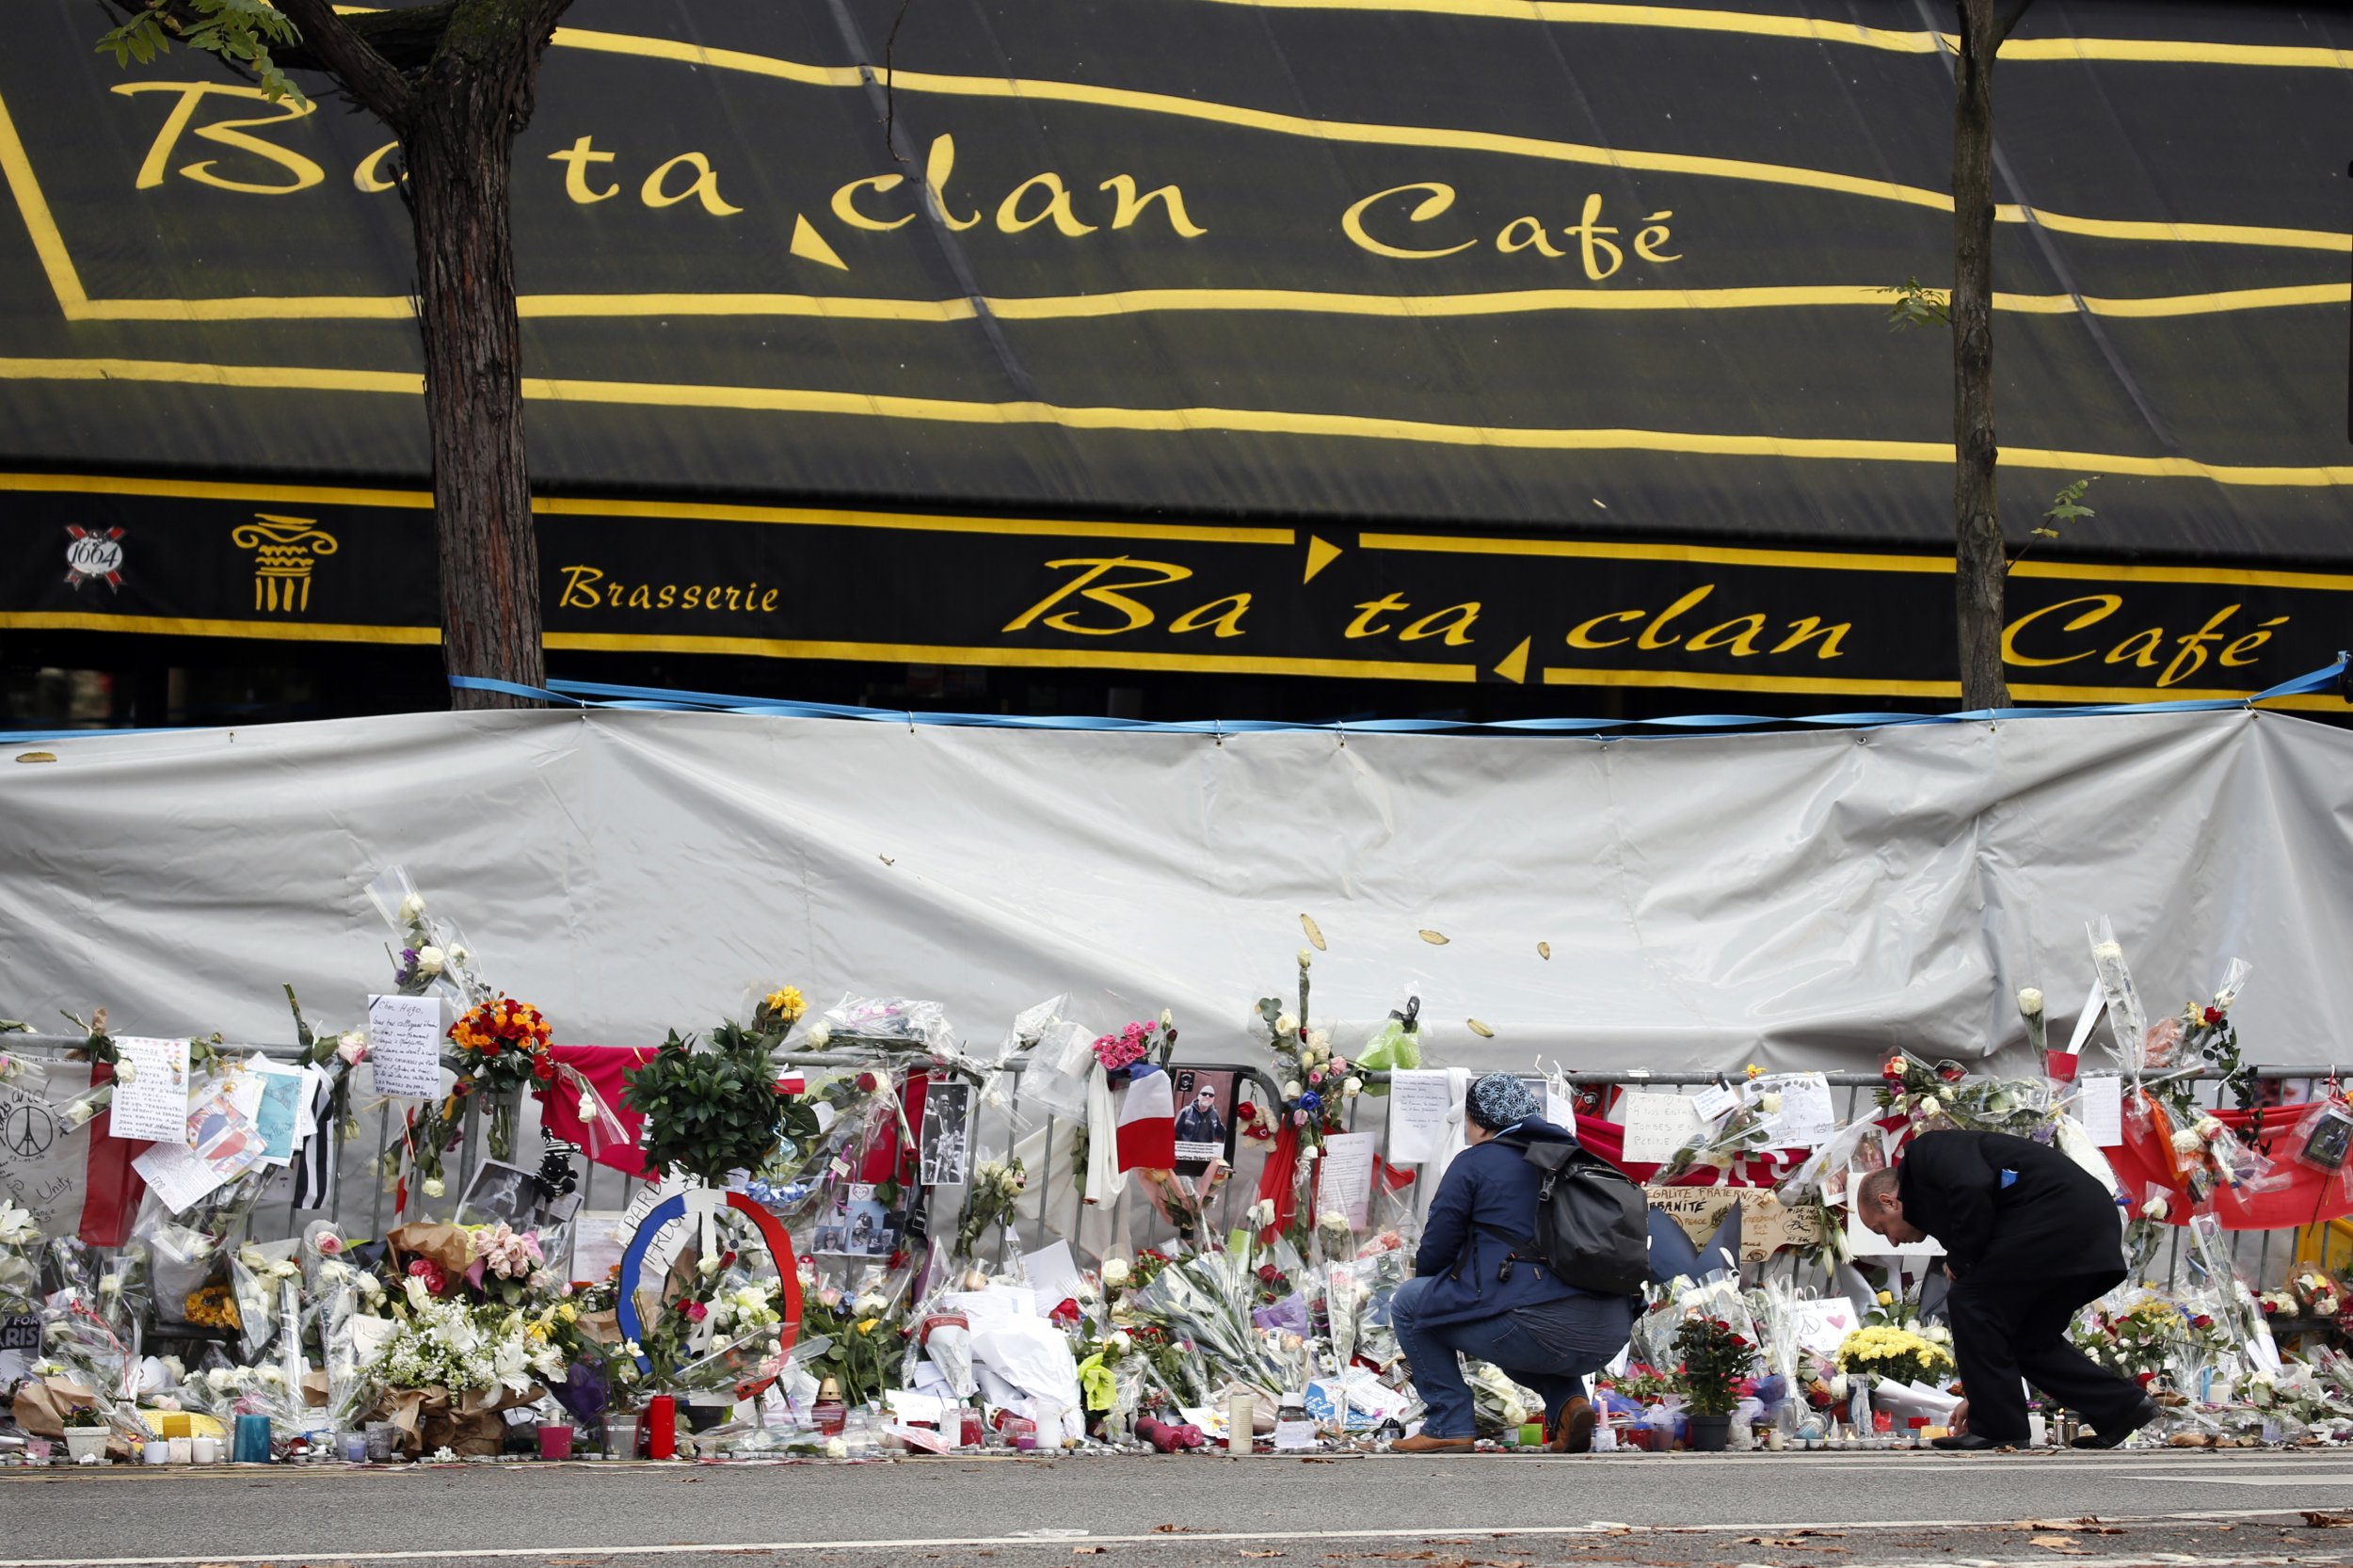 Нападение в театре. Театр Батаклан в Париже 2015. 13 Ноября 2015 Франция теракт Bataclan.